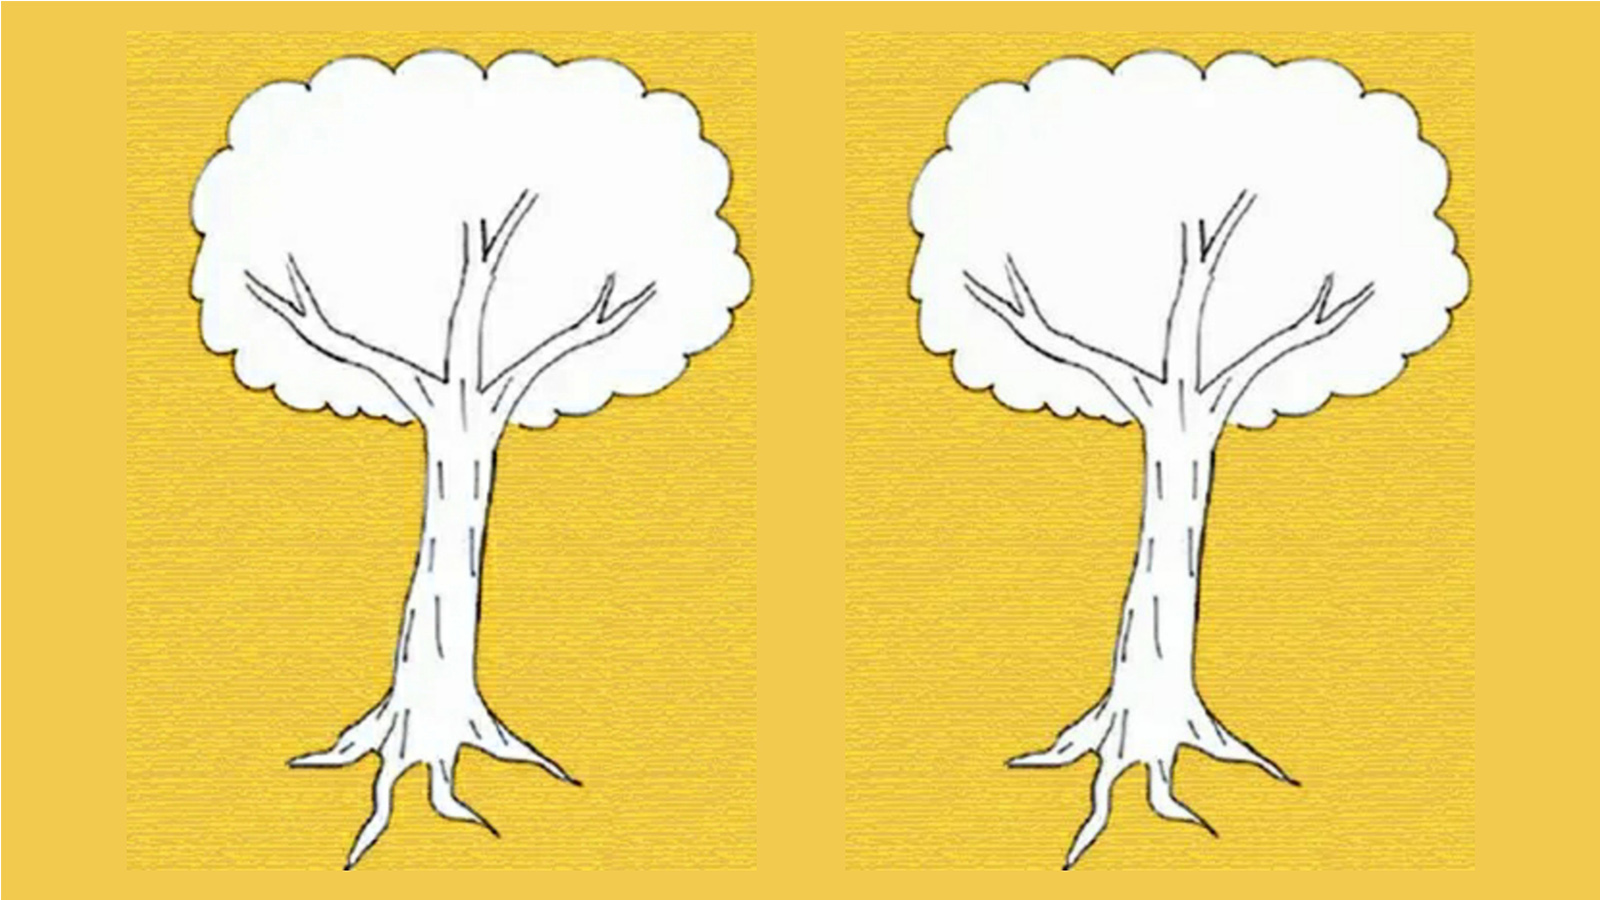 Chắc hẳn bạn muốn biết cách vẽ cây sao cho mang lại cảm xúc chân thật, đúng không? Hãy tham khảo bài trắc nghiệm Karl Koch và khám phá cách tạo ra những hình vẽ đầy cảm xúc và sáng tạo trong ảnh này nhé!